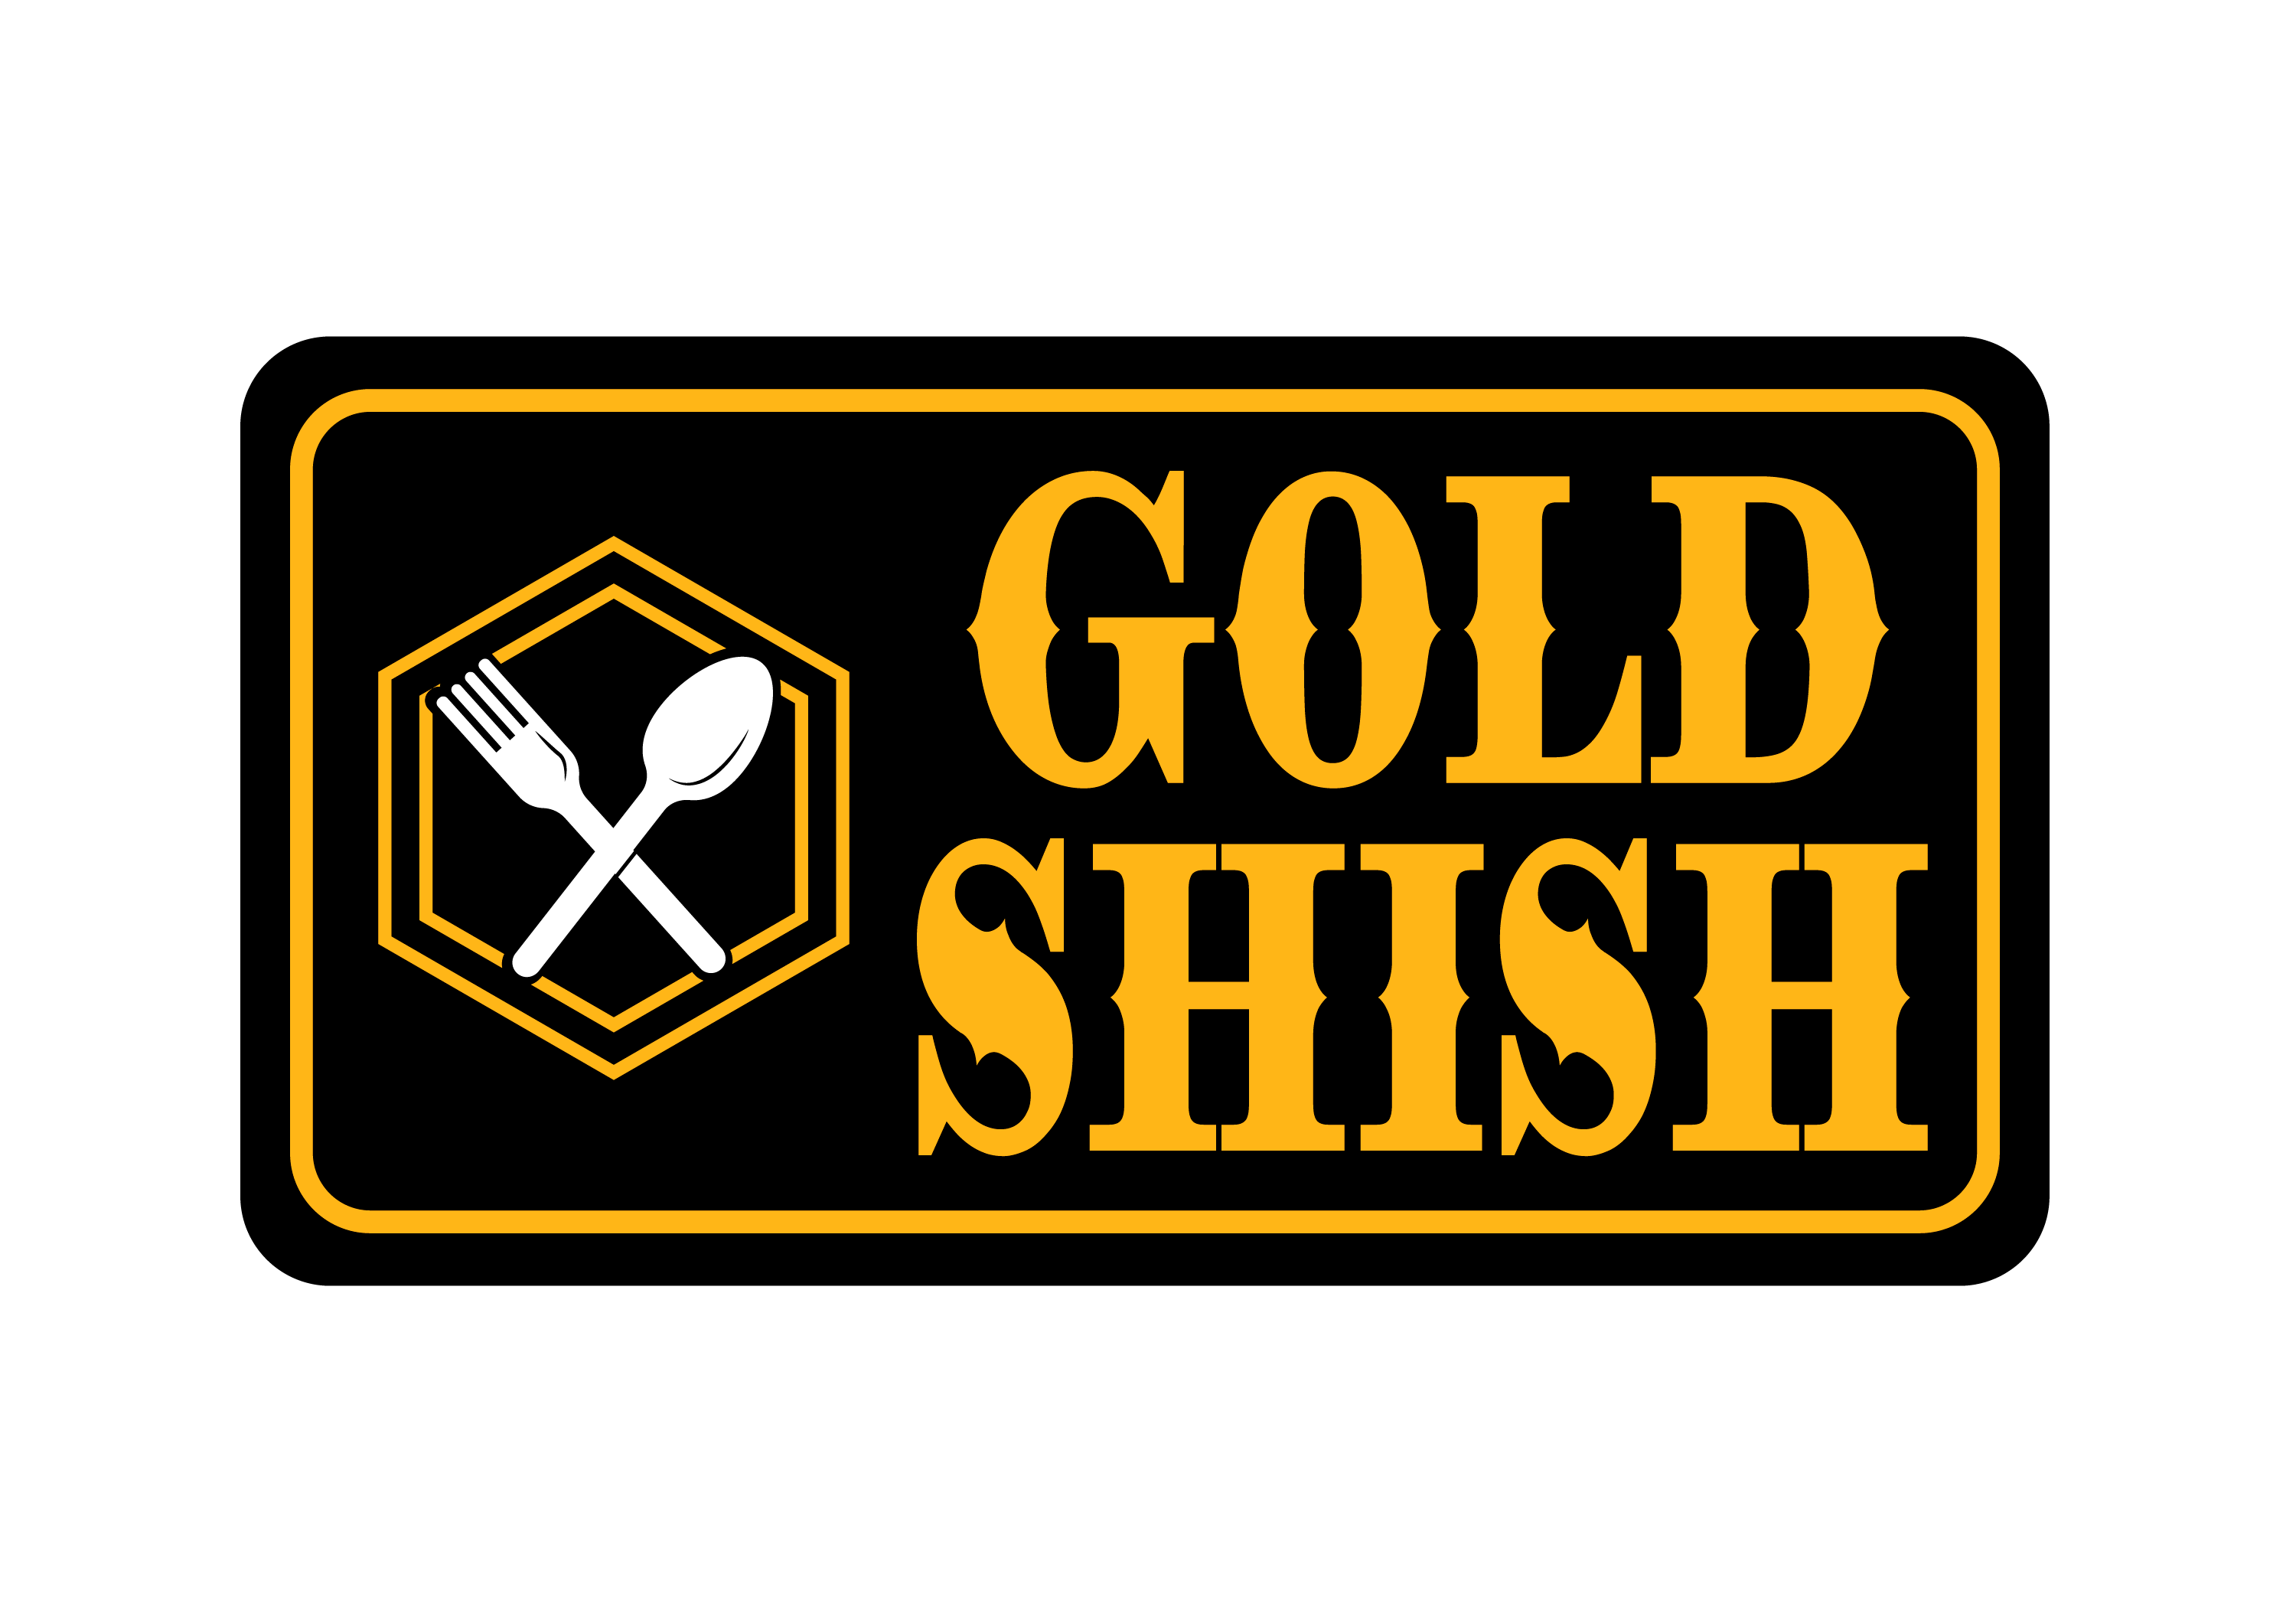 Gold Shish